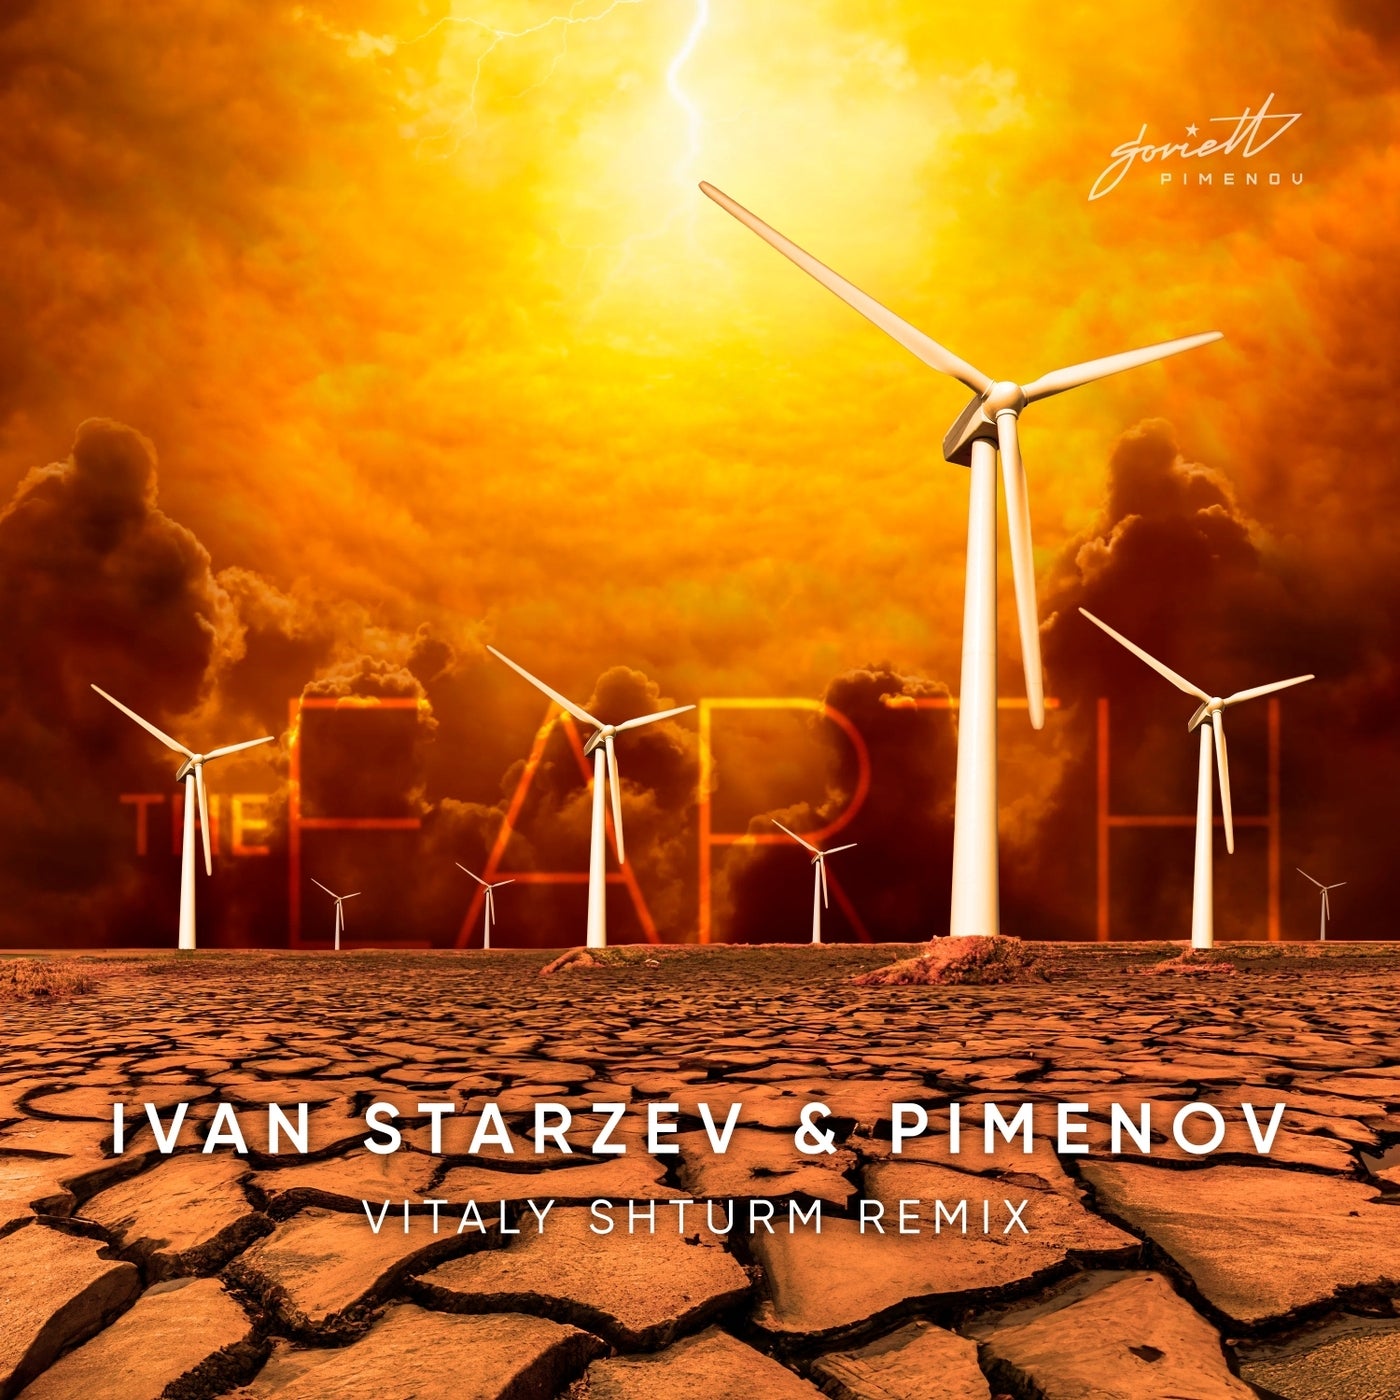 Cover - Pimenov, Ivan Starzev - The Earth (Vitaly Shturm Remix)